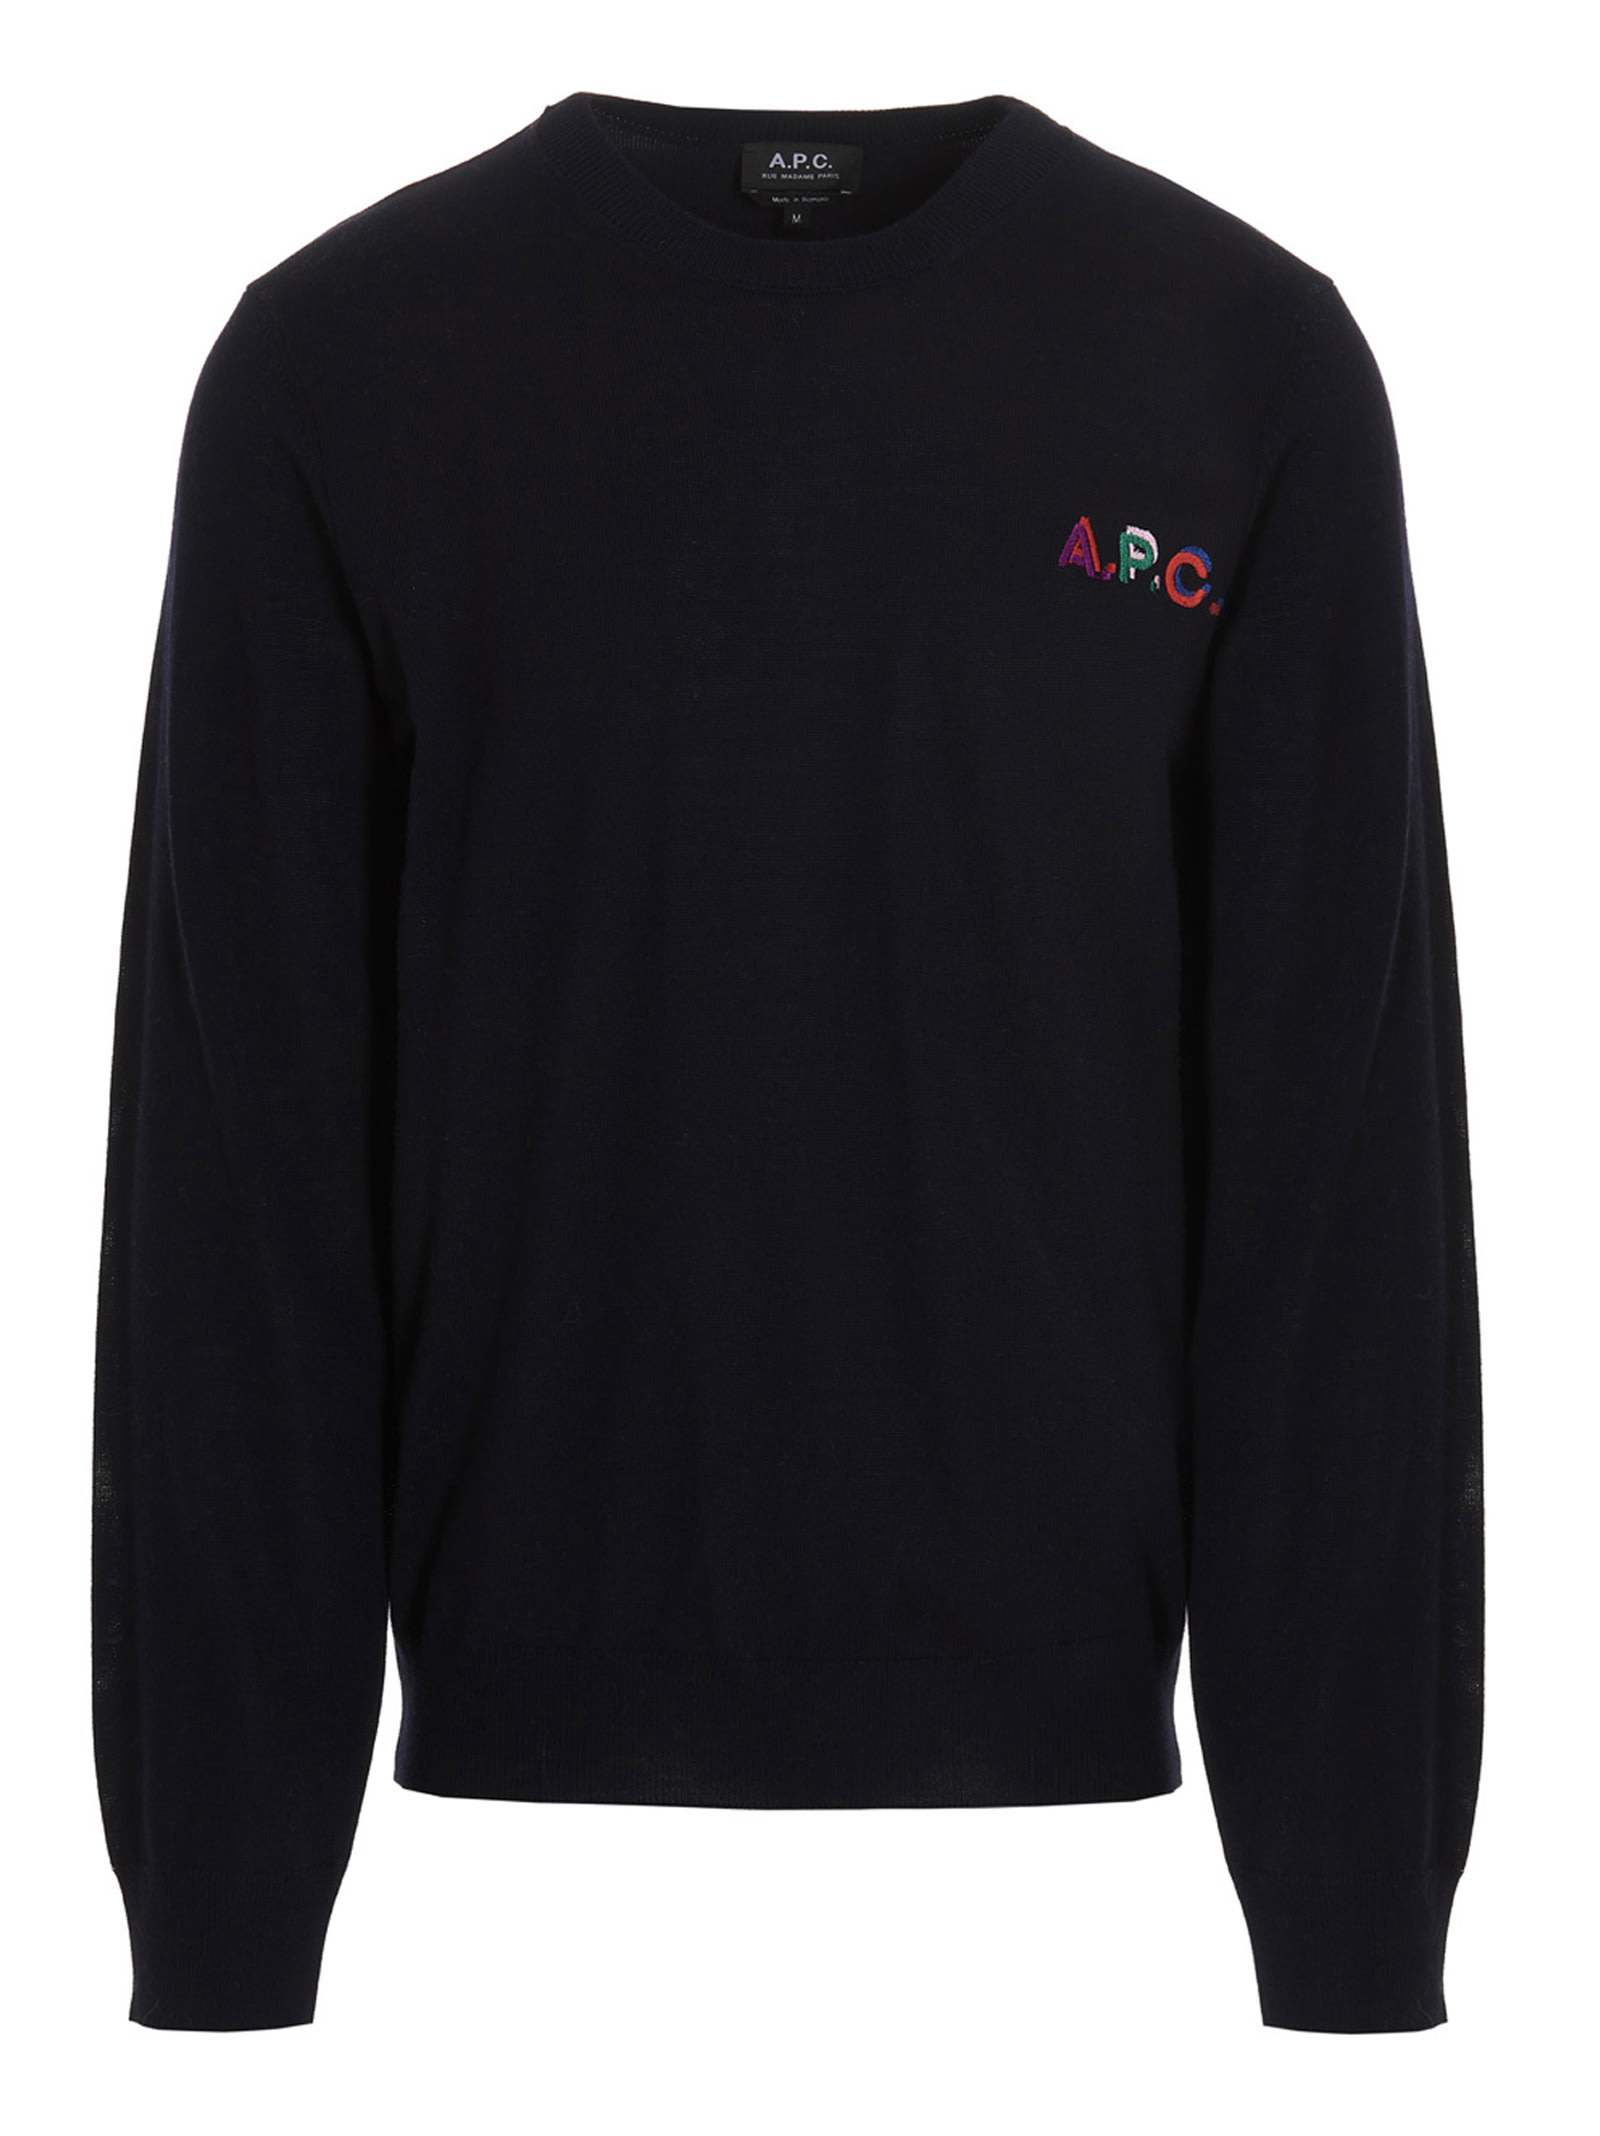 A.P.C. brian Sweater